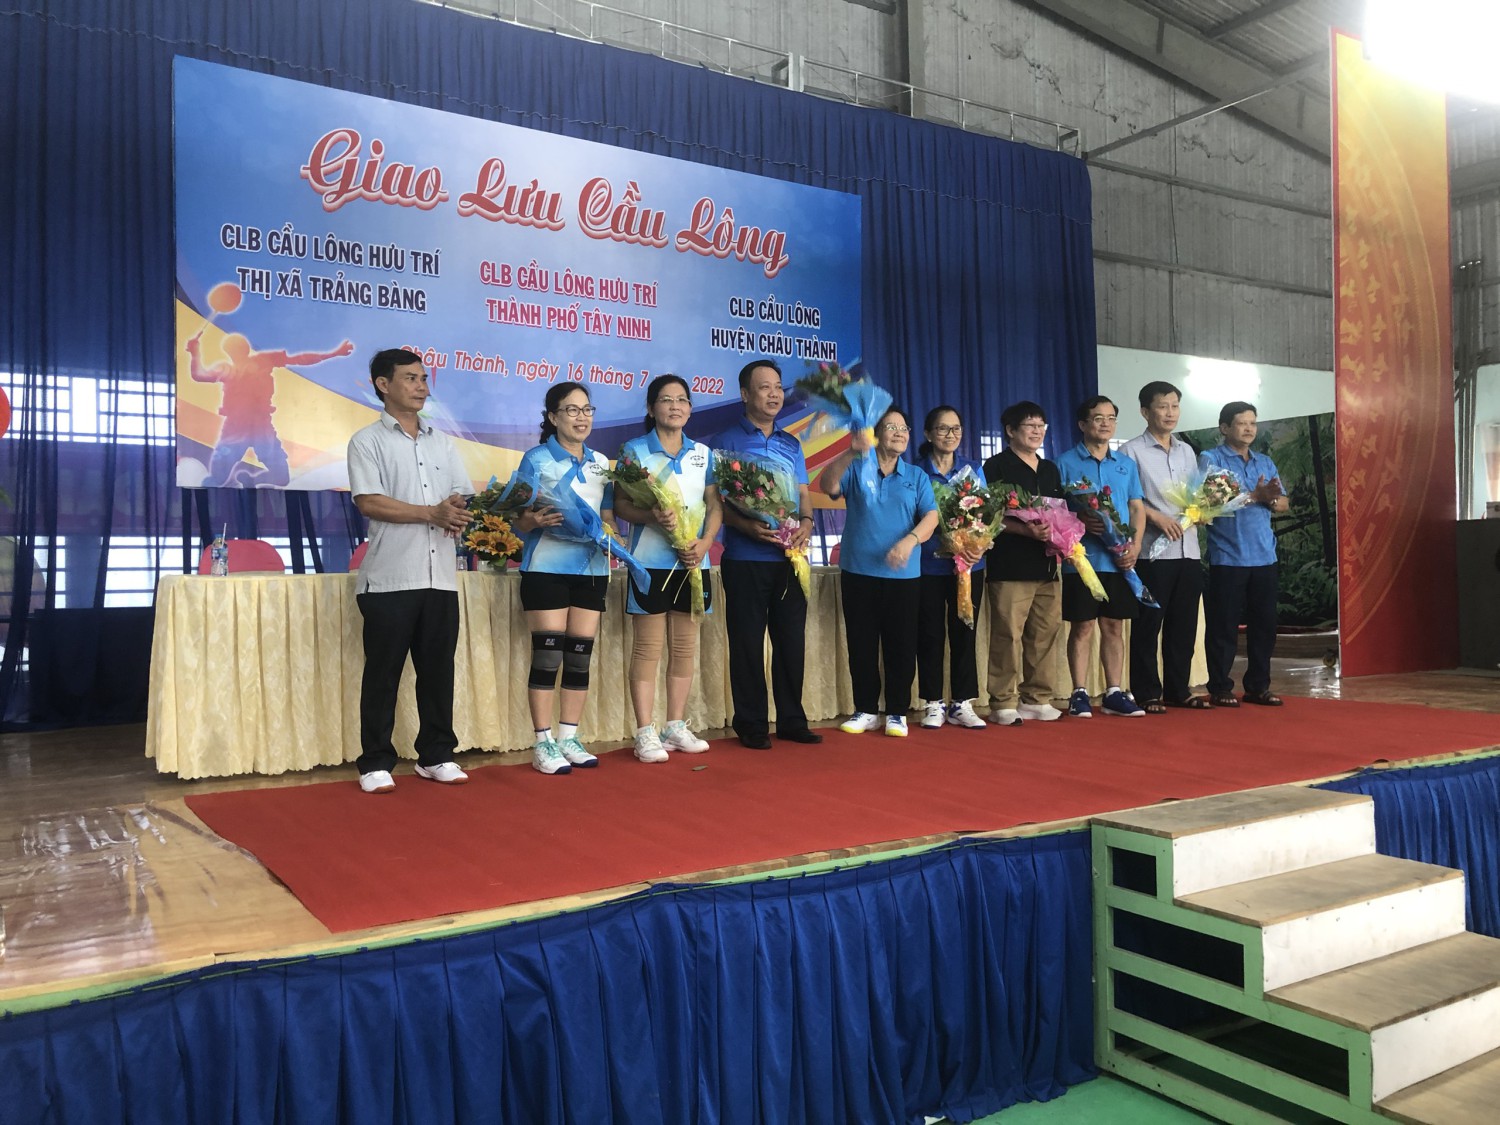 Châu Thành: Tổ chức giao lưu Câu lạc bộ Cầu lông huyện Châu Thành, Thành phố Tây Ninh và Thị xã Trảng Bàng